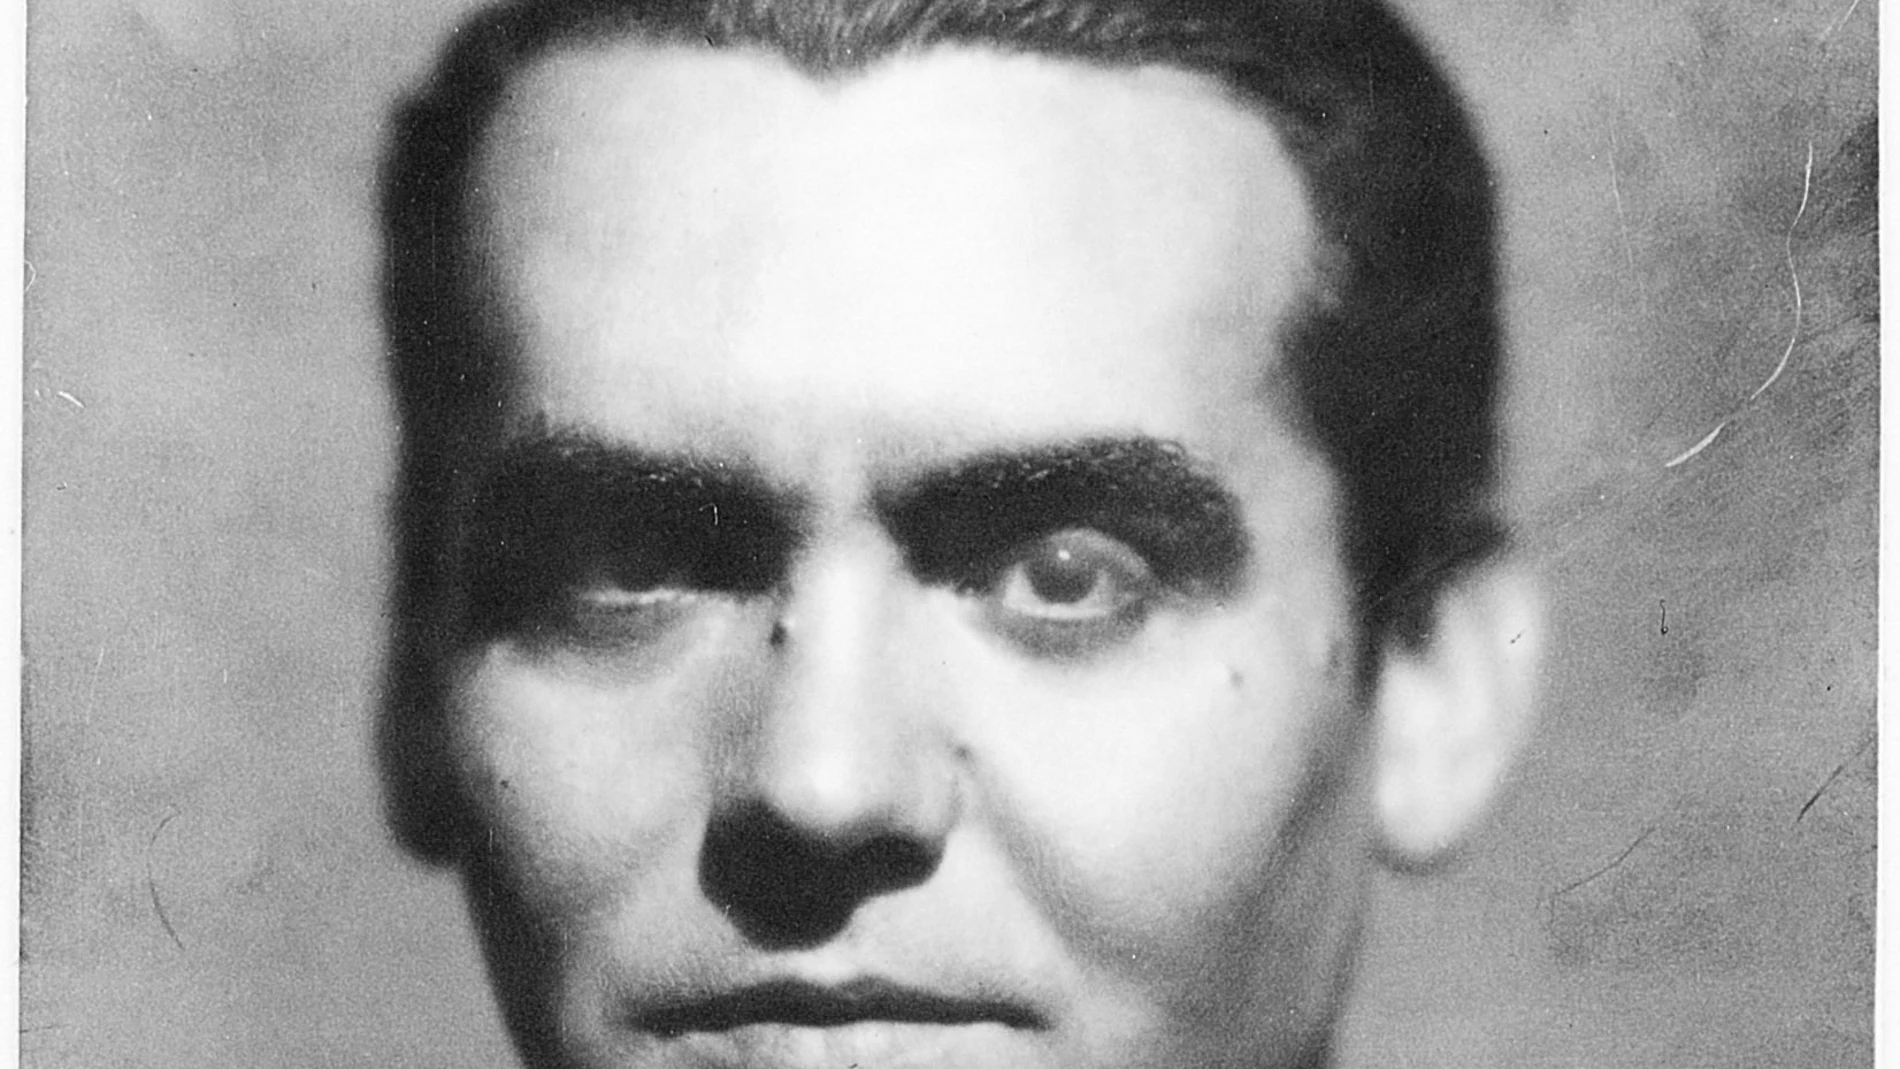 El poeta universal Federico García Lorca